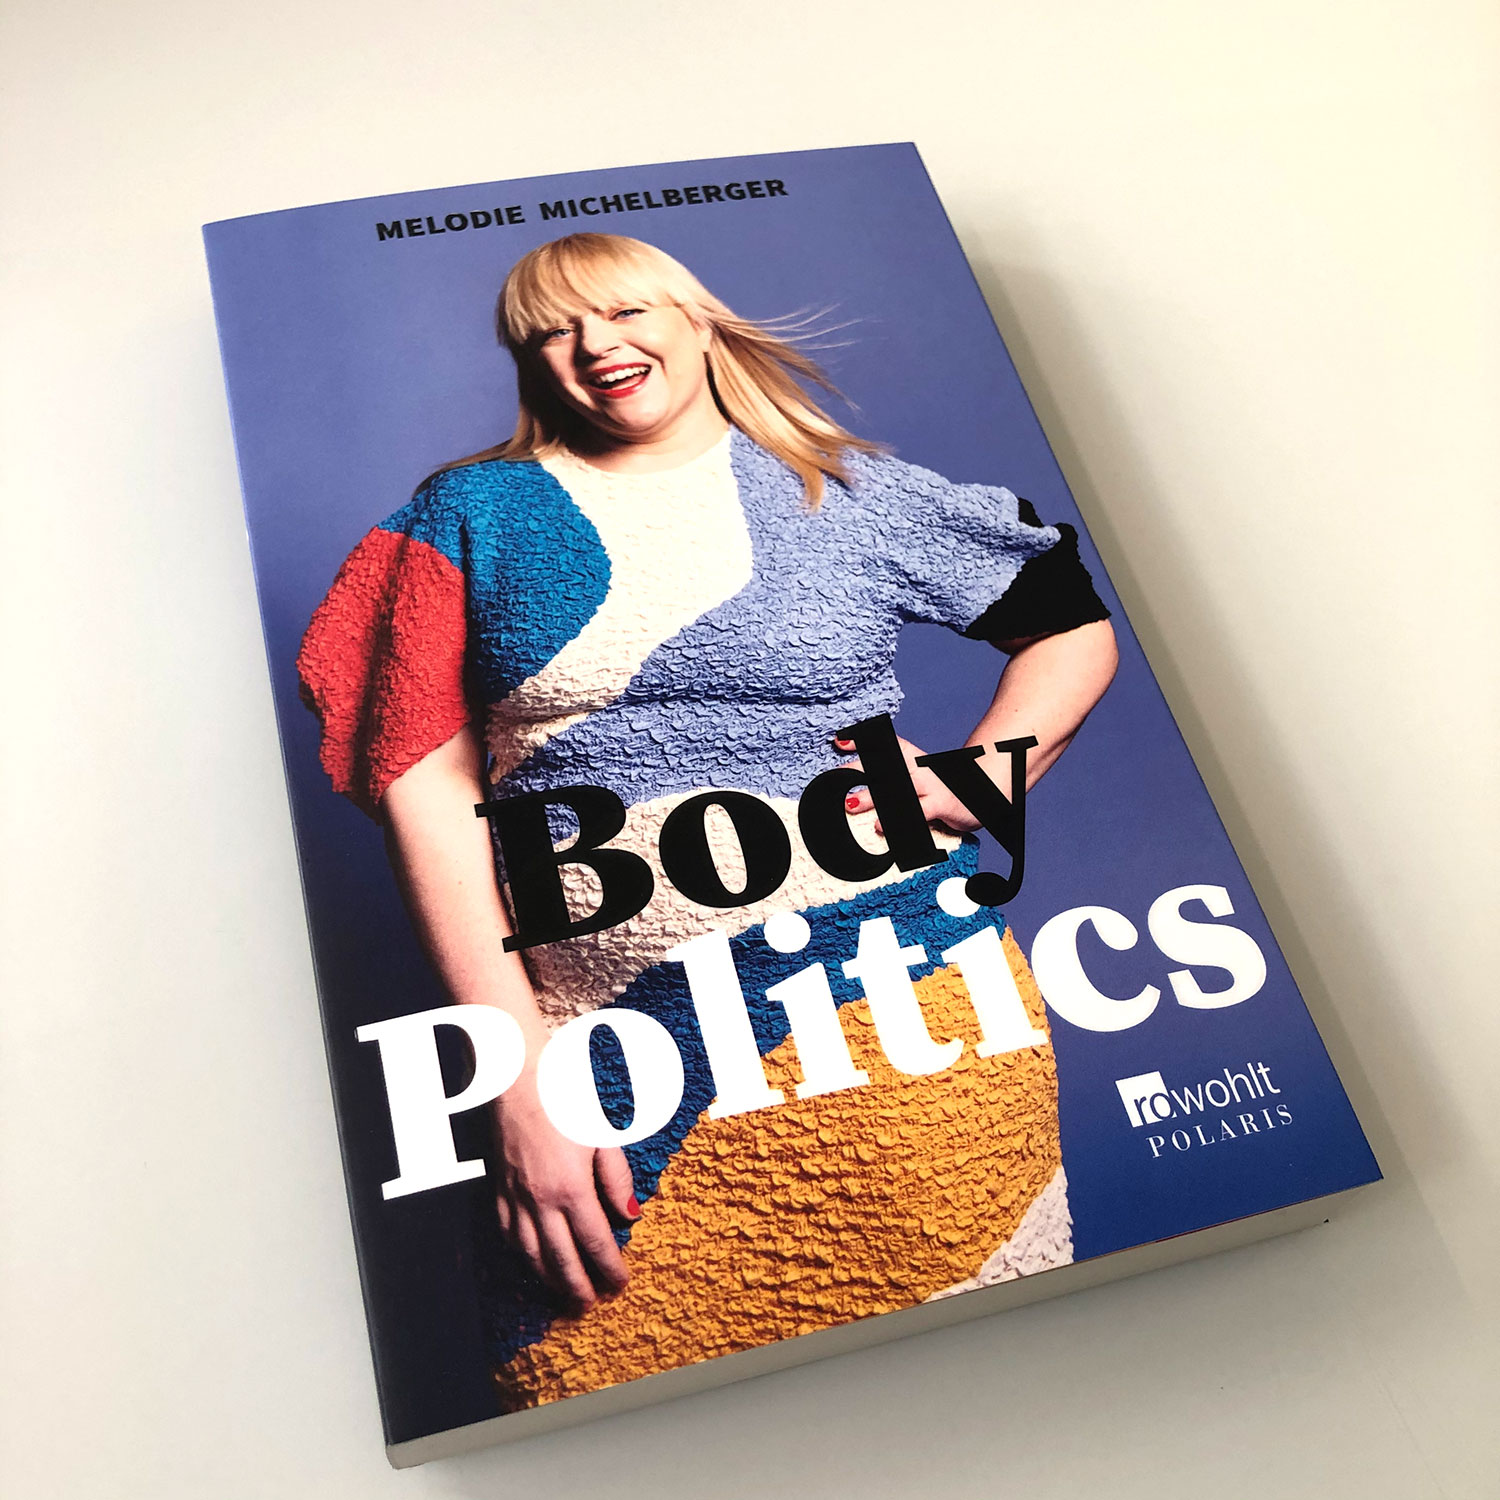 Body Politics - Buch über vermeintliche Schönheitsideale und wie man den Teufelskreis durchbrechen kann - von Melodie Michelberger - erschienen im Rowohlt Verlag